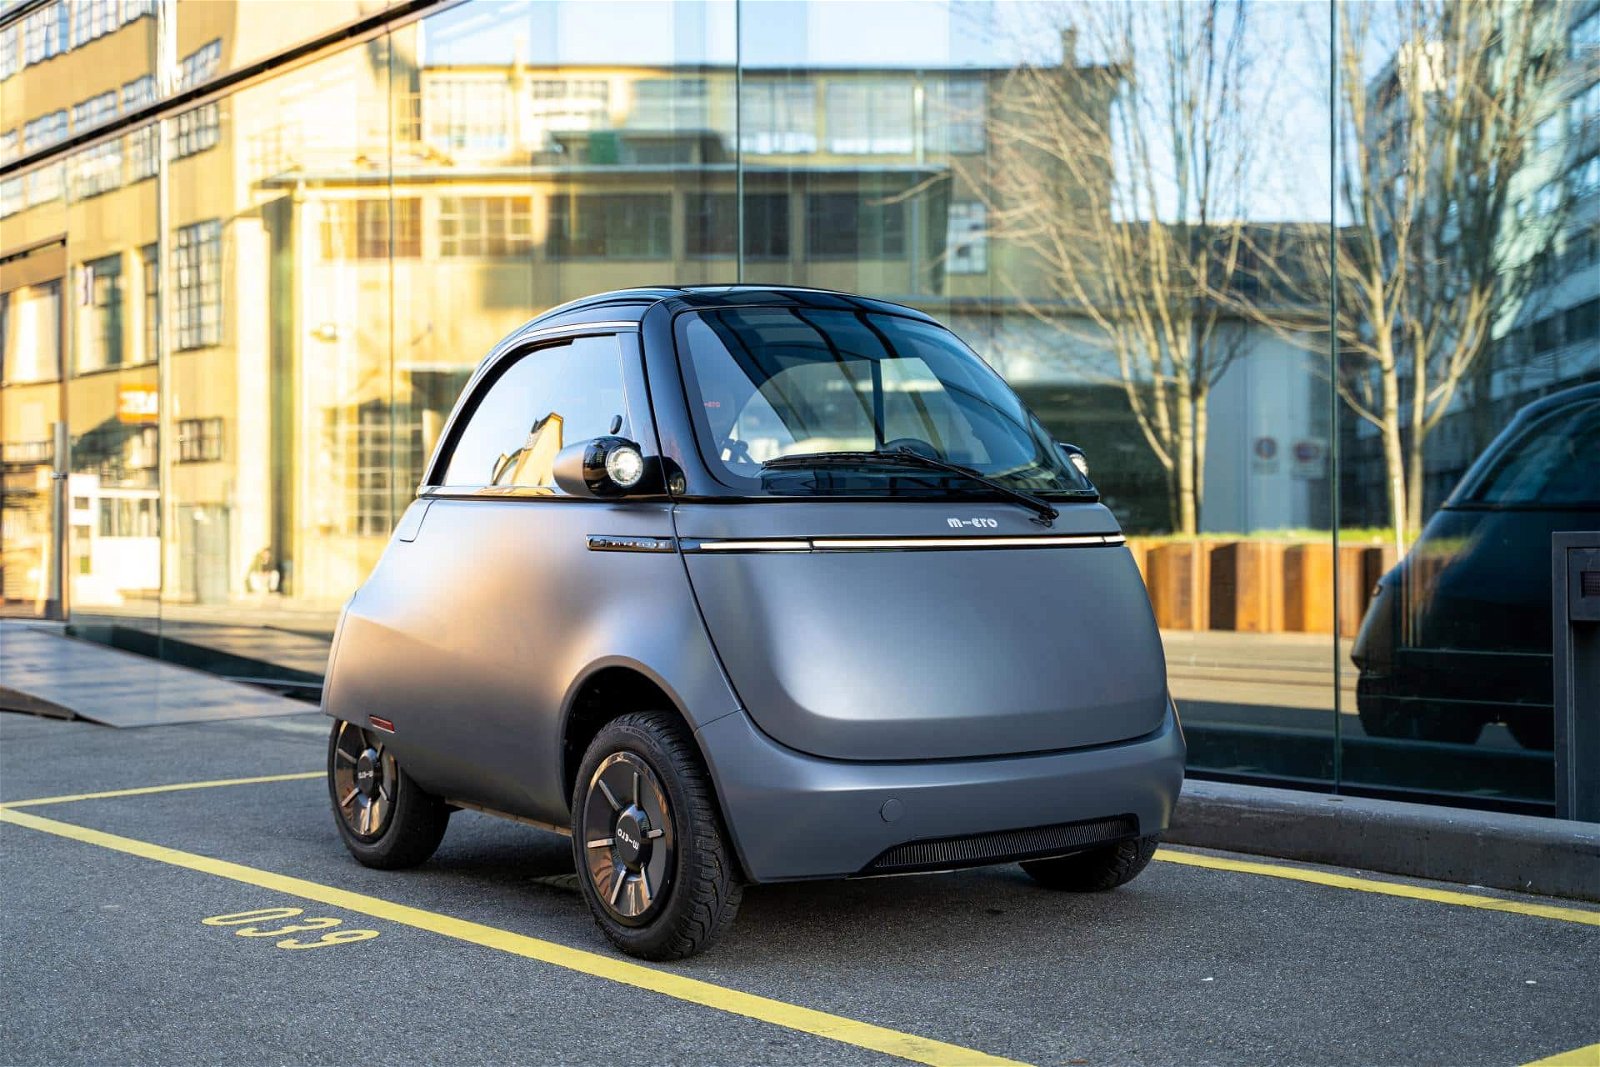 Urbane Mobilität: Microlino - das kompakte Elektroauto für die Stadt